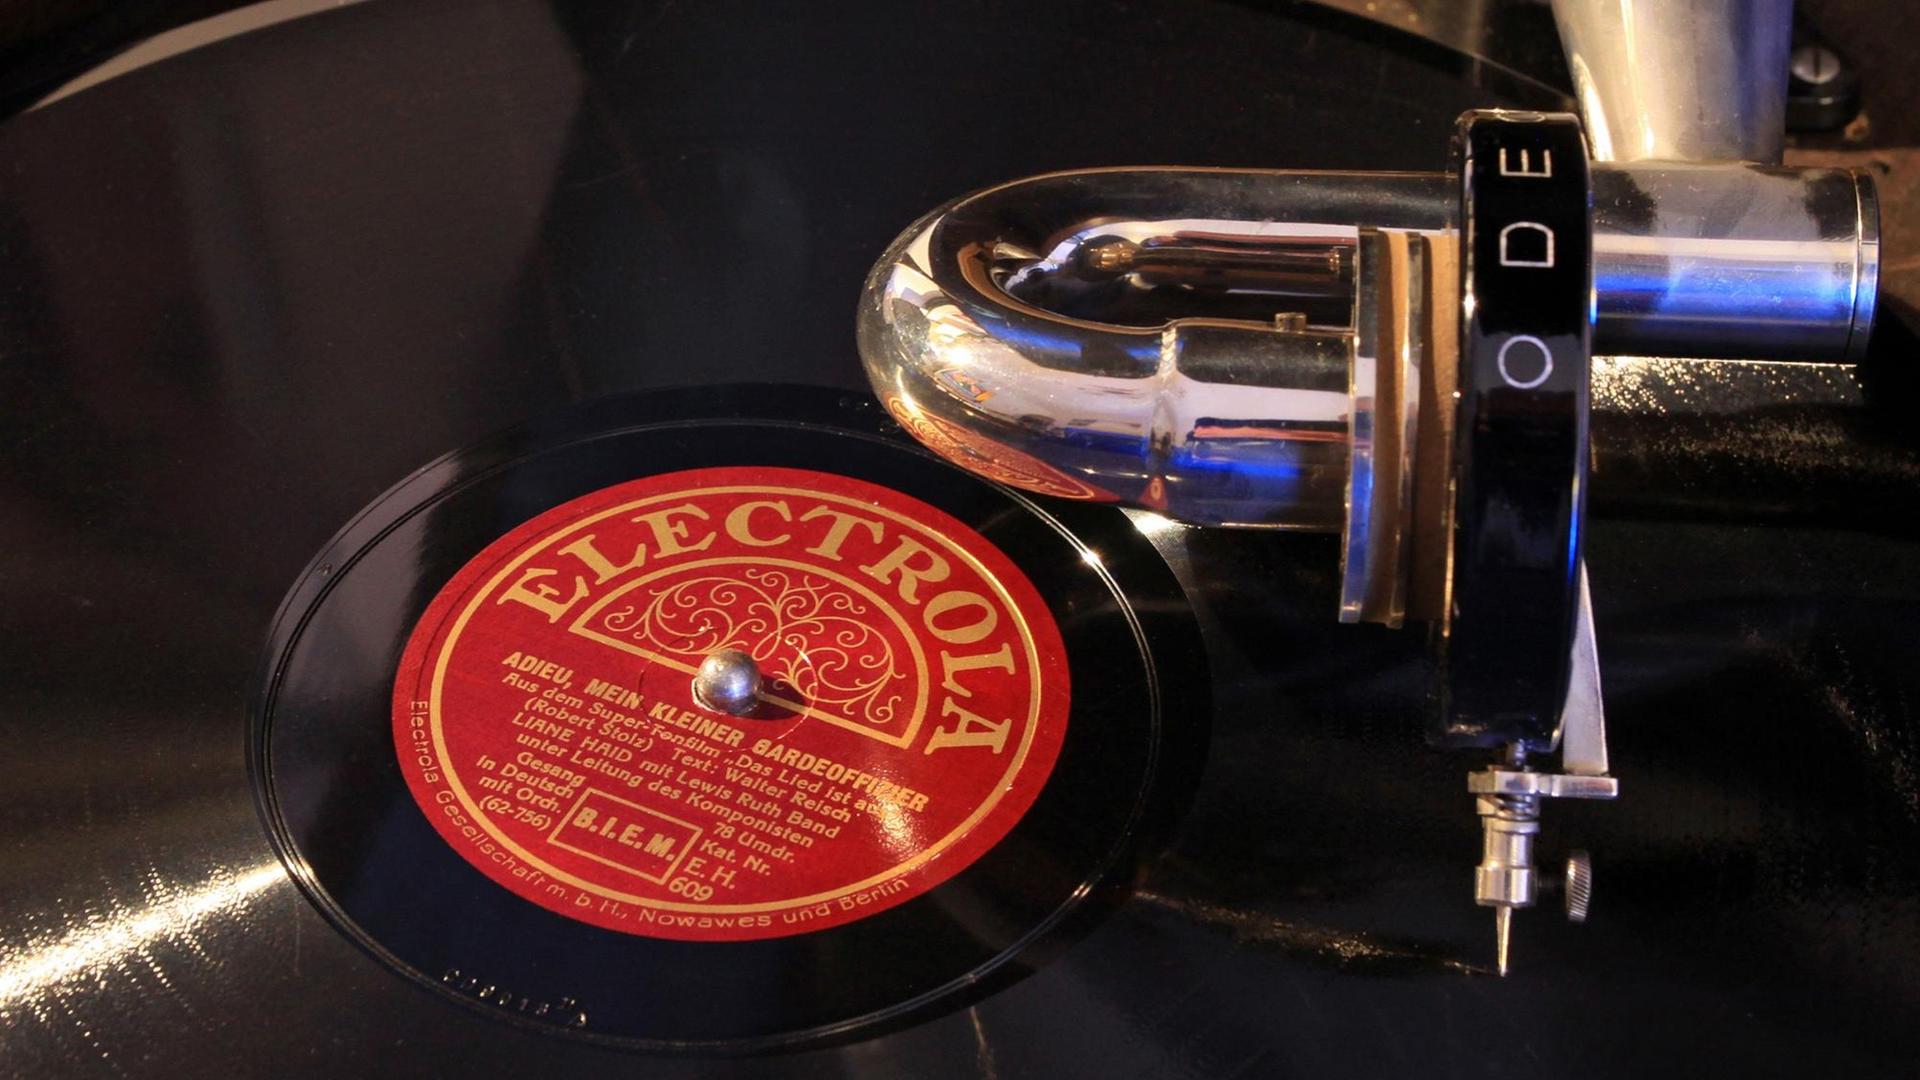 Eine Schellack-Platte der Firma Electrola mit dem Lied "Adieu mein kleiner Gardeoffizier" (Robert Stolz, gesungen von Liane Haid, 78 Umdrehungen) wird auf einem trichterlosen Grammophon aus den 1920er-Jahren abgespielt